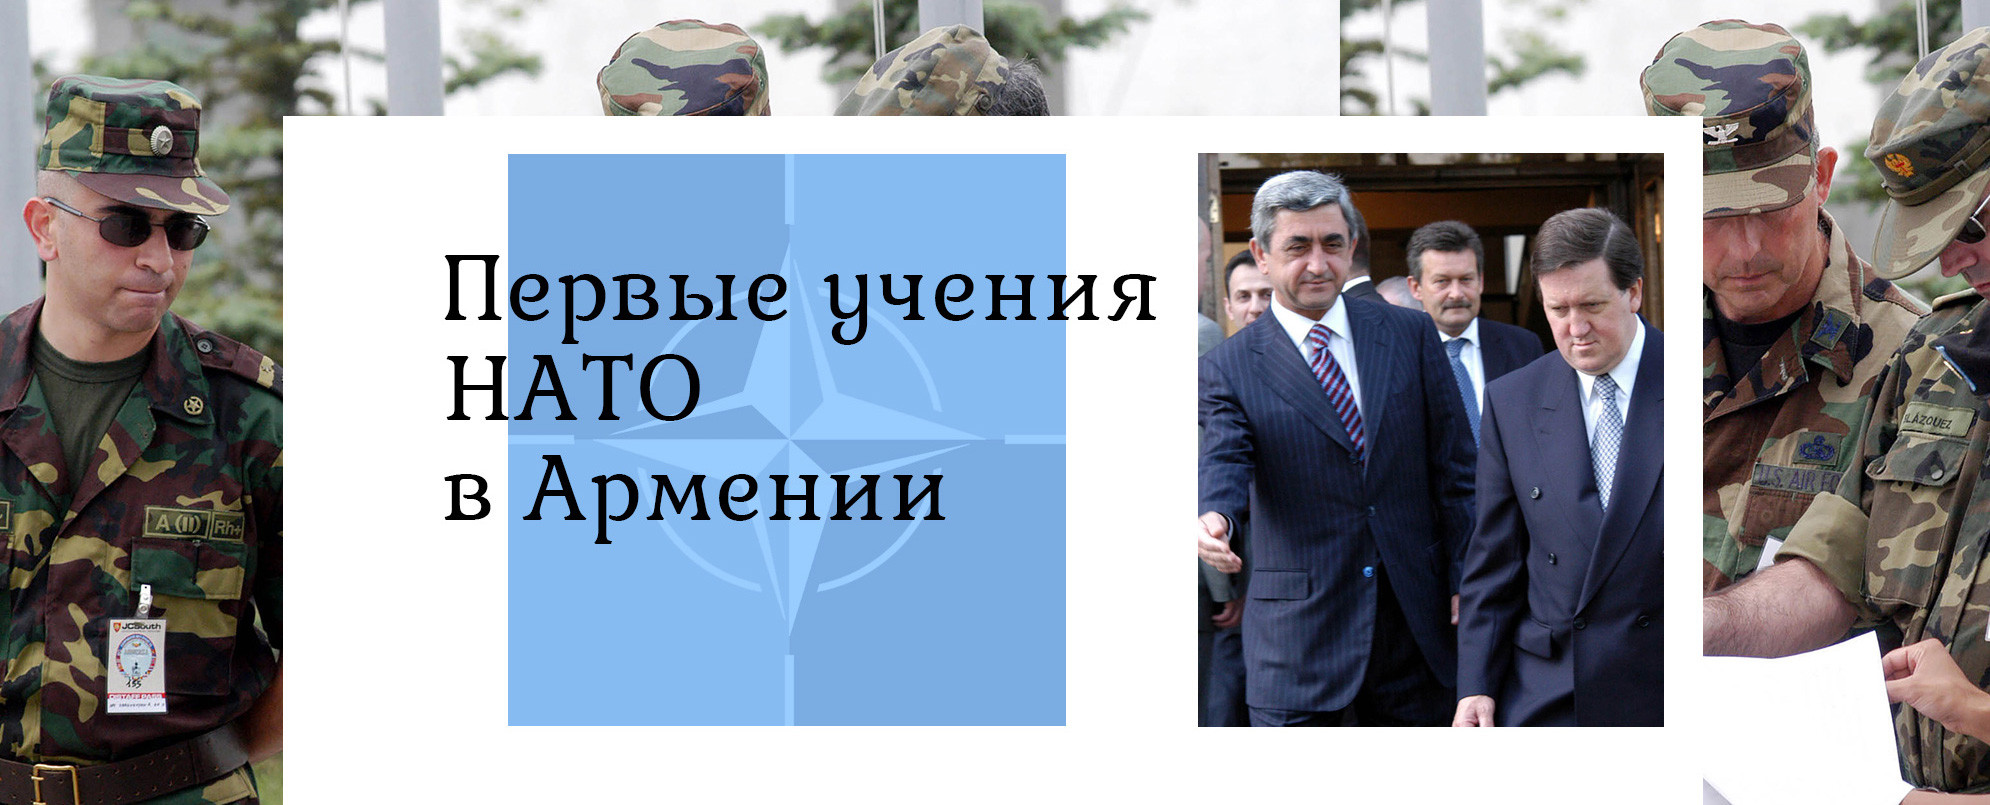 Первые учения НАТО в Армении